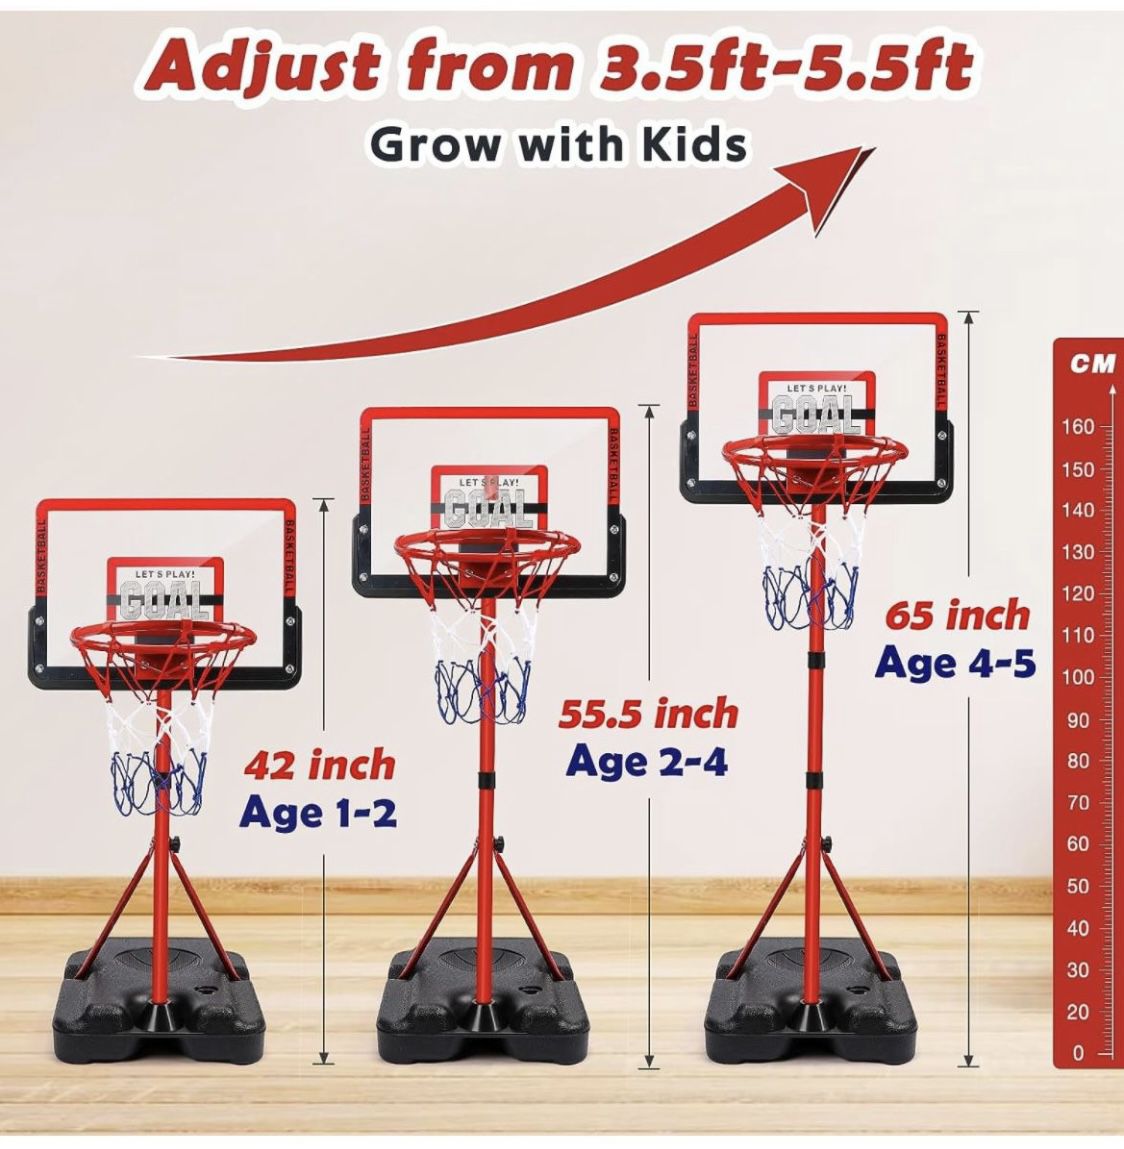 Kids Basketball Hoop Indoor Adjustable Height 3.5ft-5.5ft Mini Toddler Basketball Hoop Outdoor Indoor Basketball Goal Backyard Outside Toys